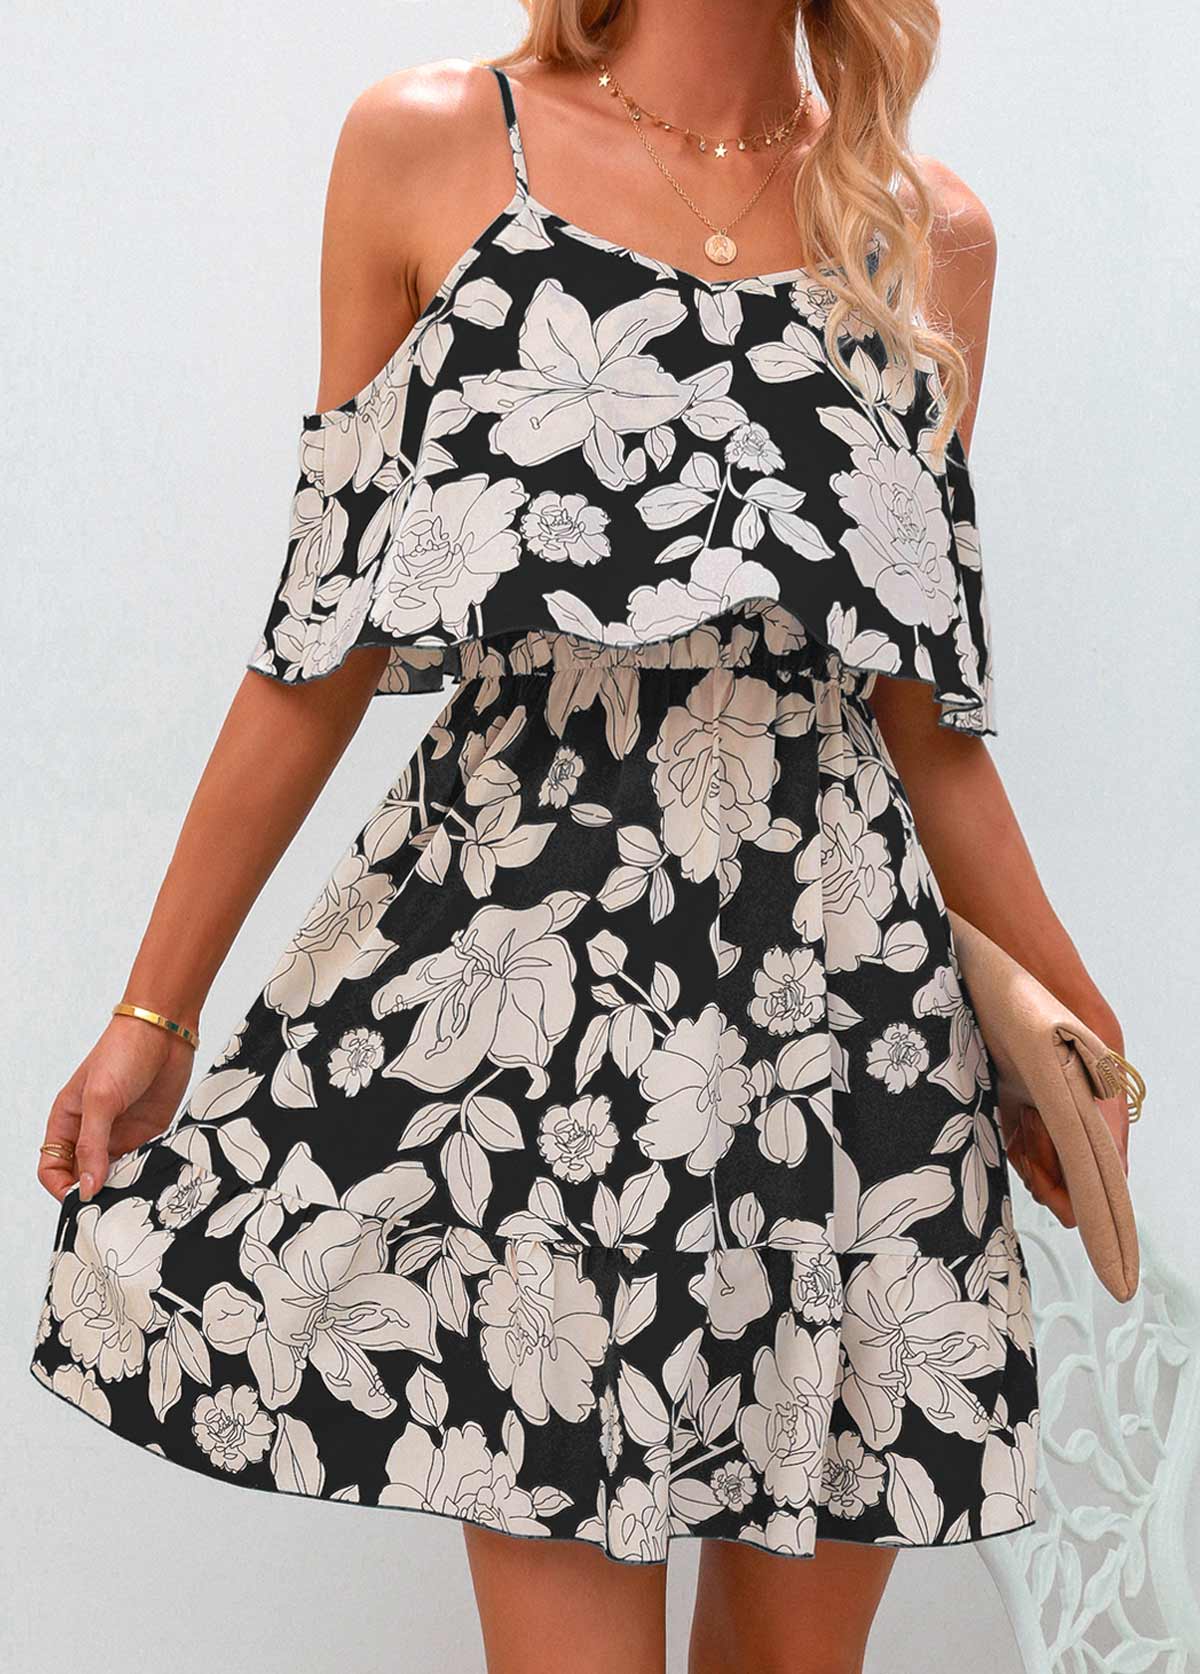 Strappy Cold Shoulder Black Floral Print Dress